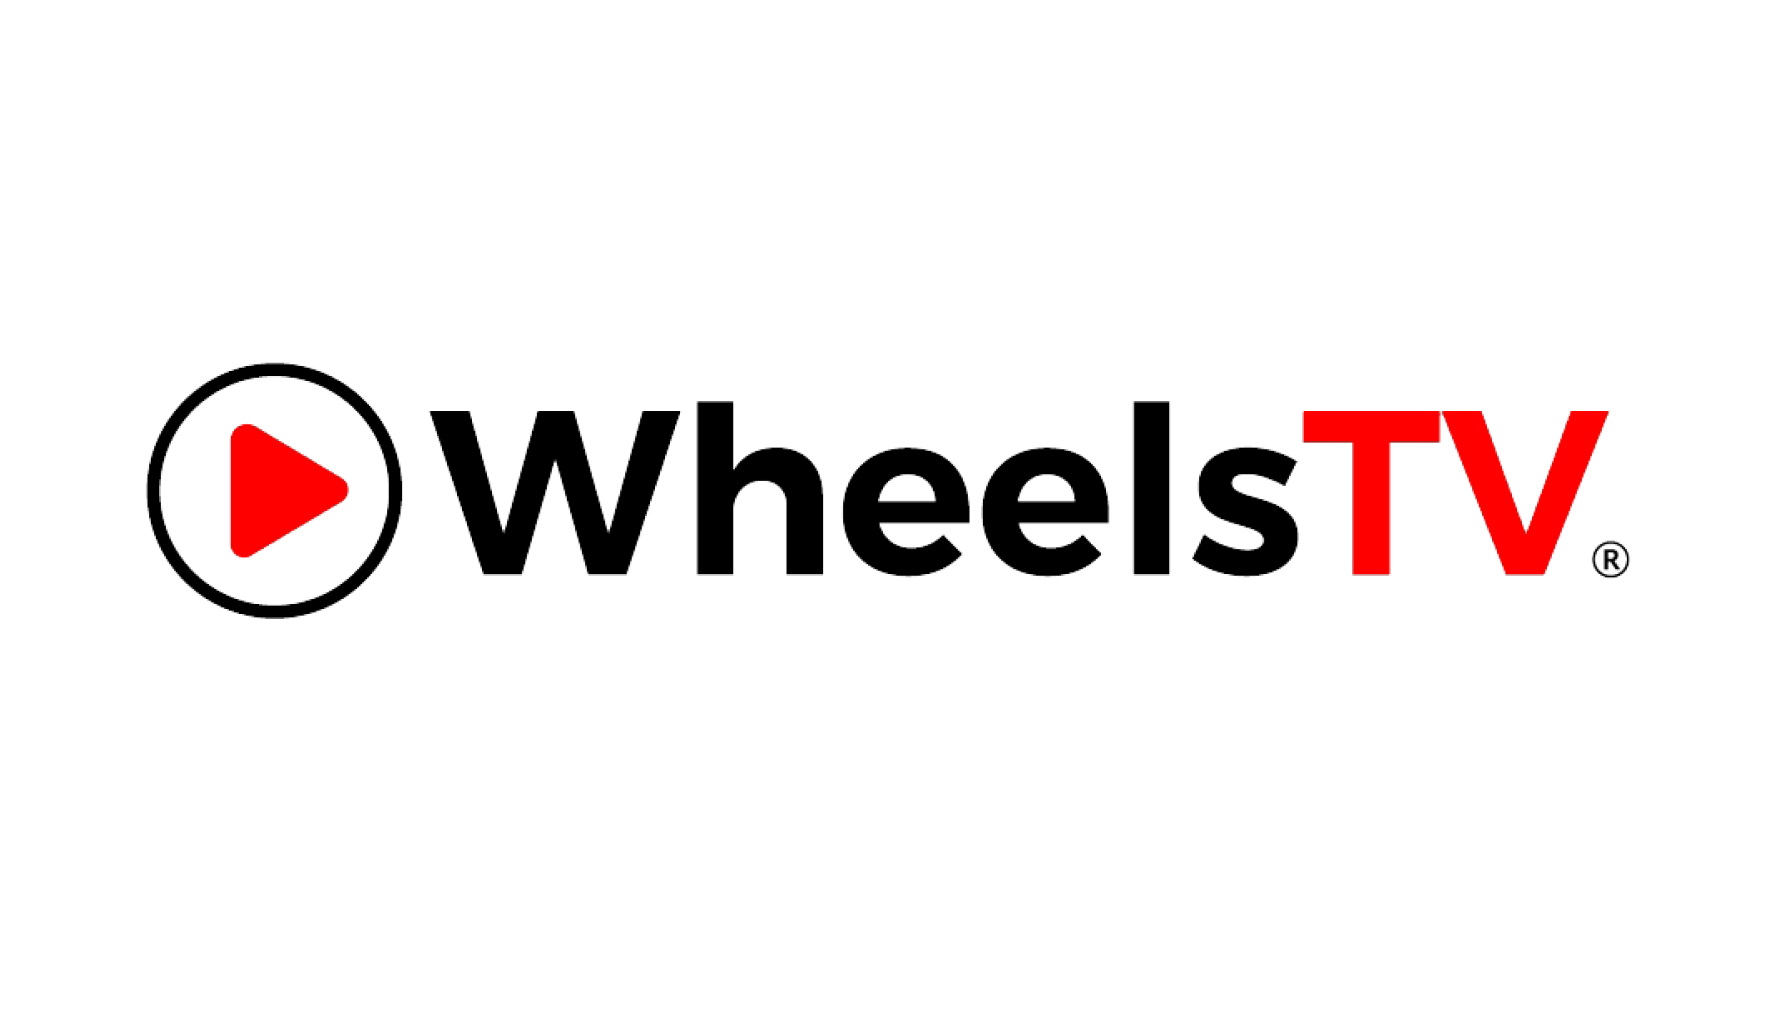 WheelsTV